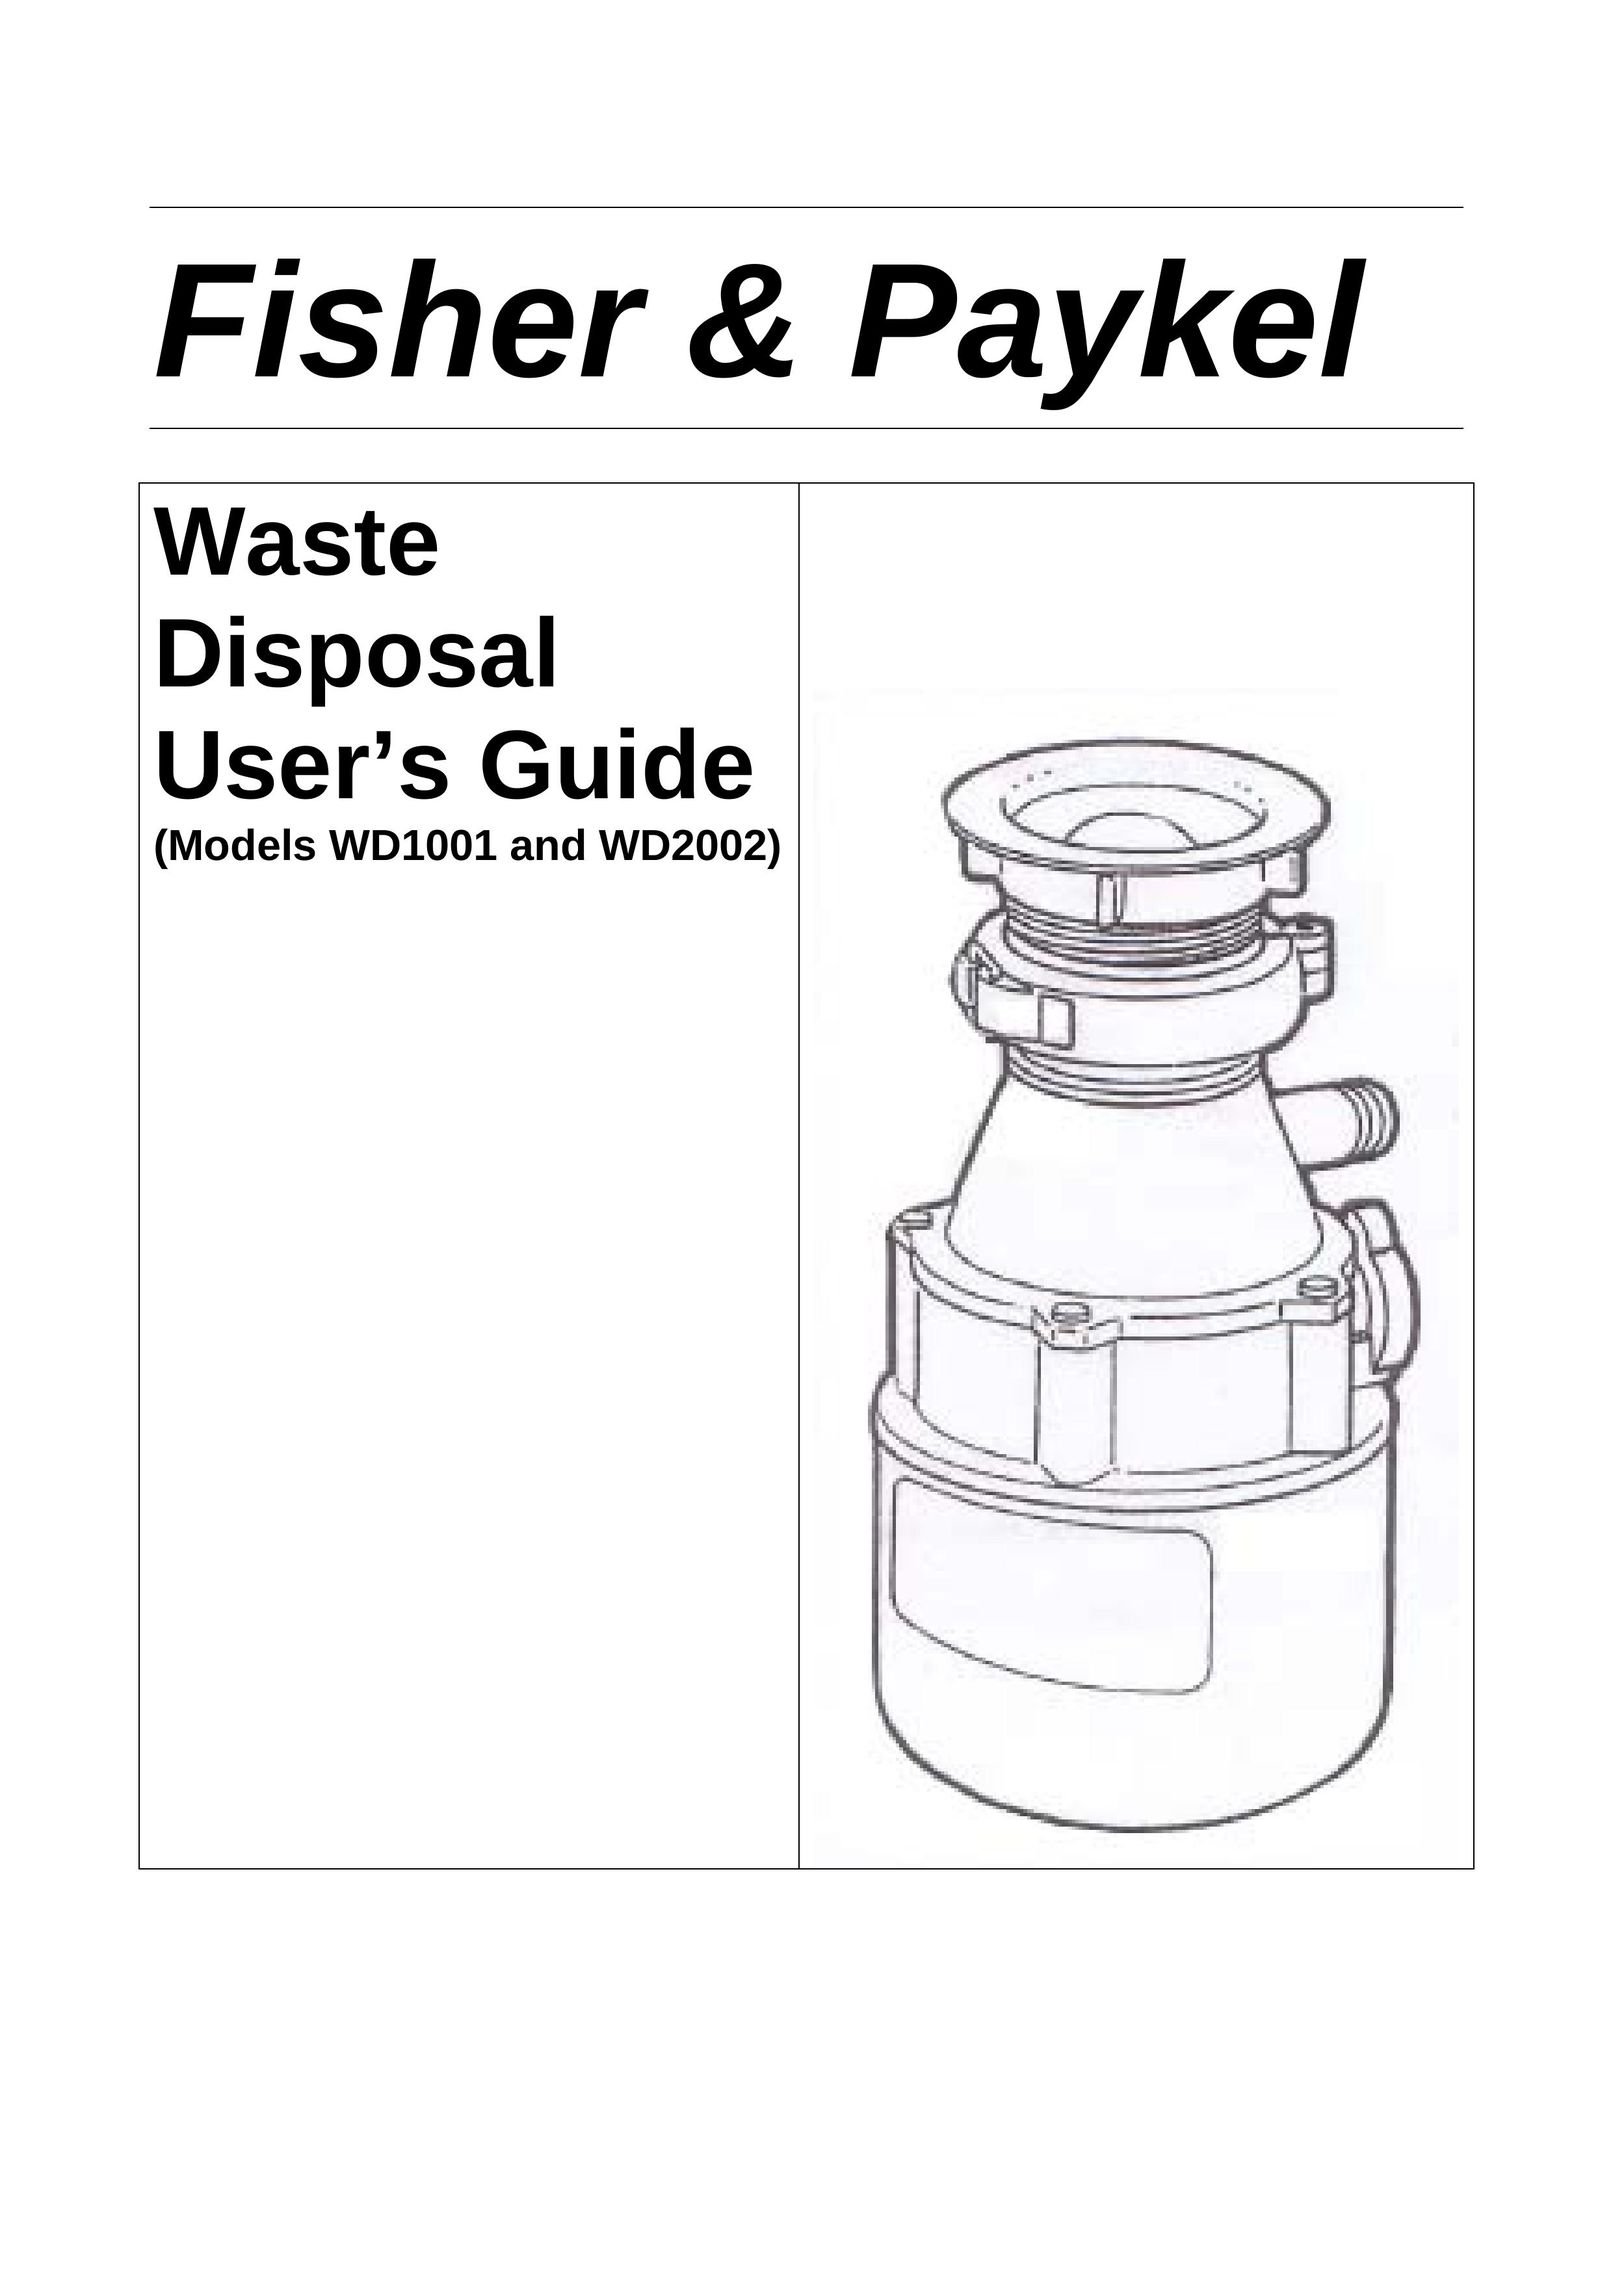 Fisher & Paykel WD1001 Garbage Disposal User Manual